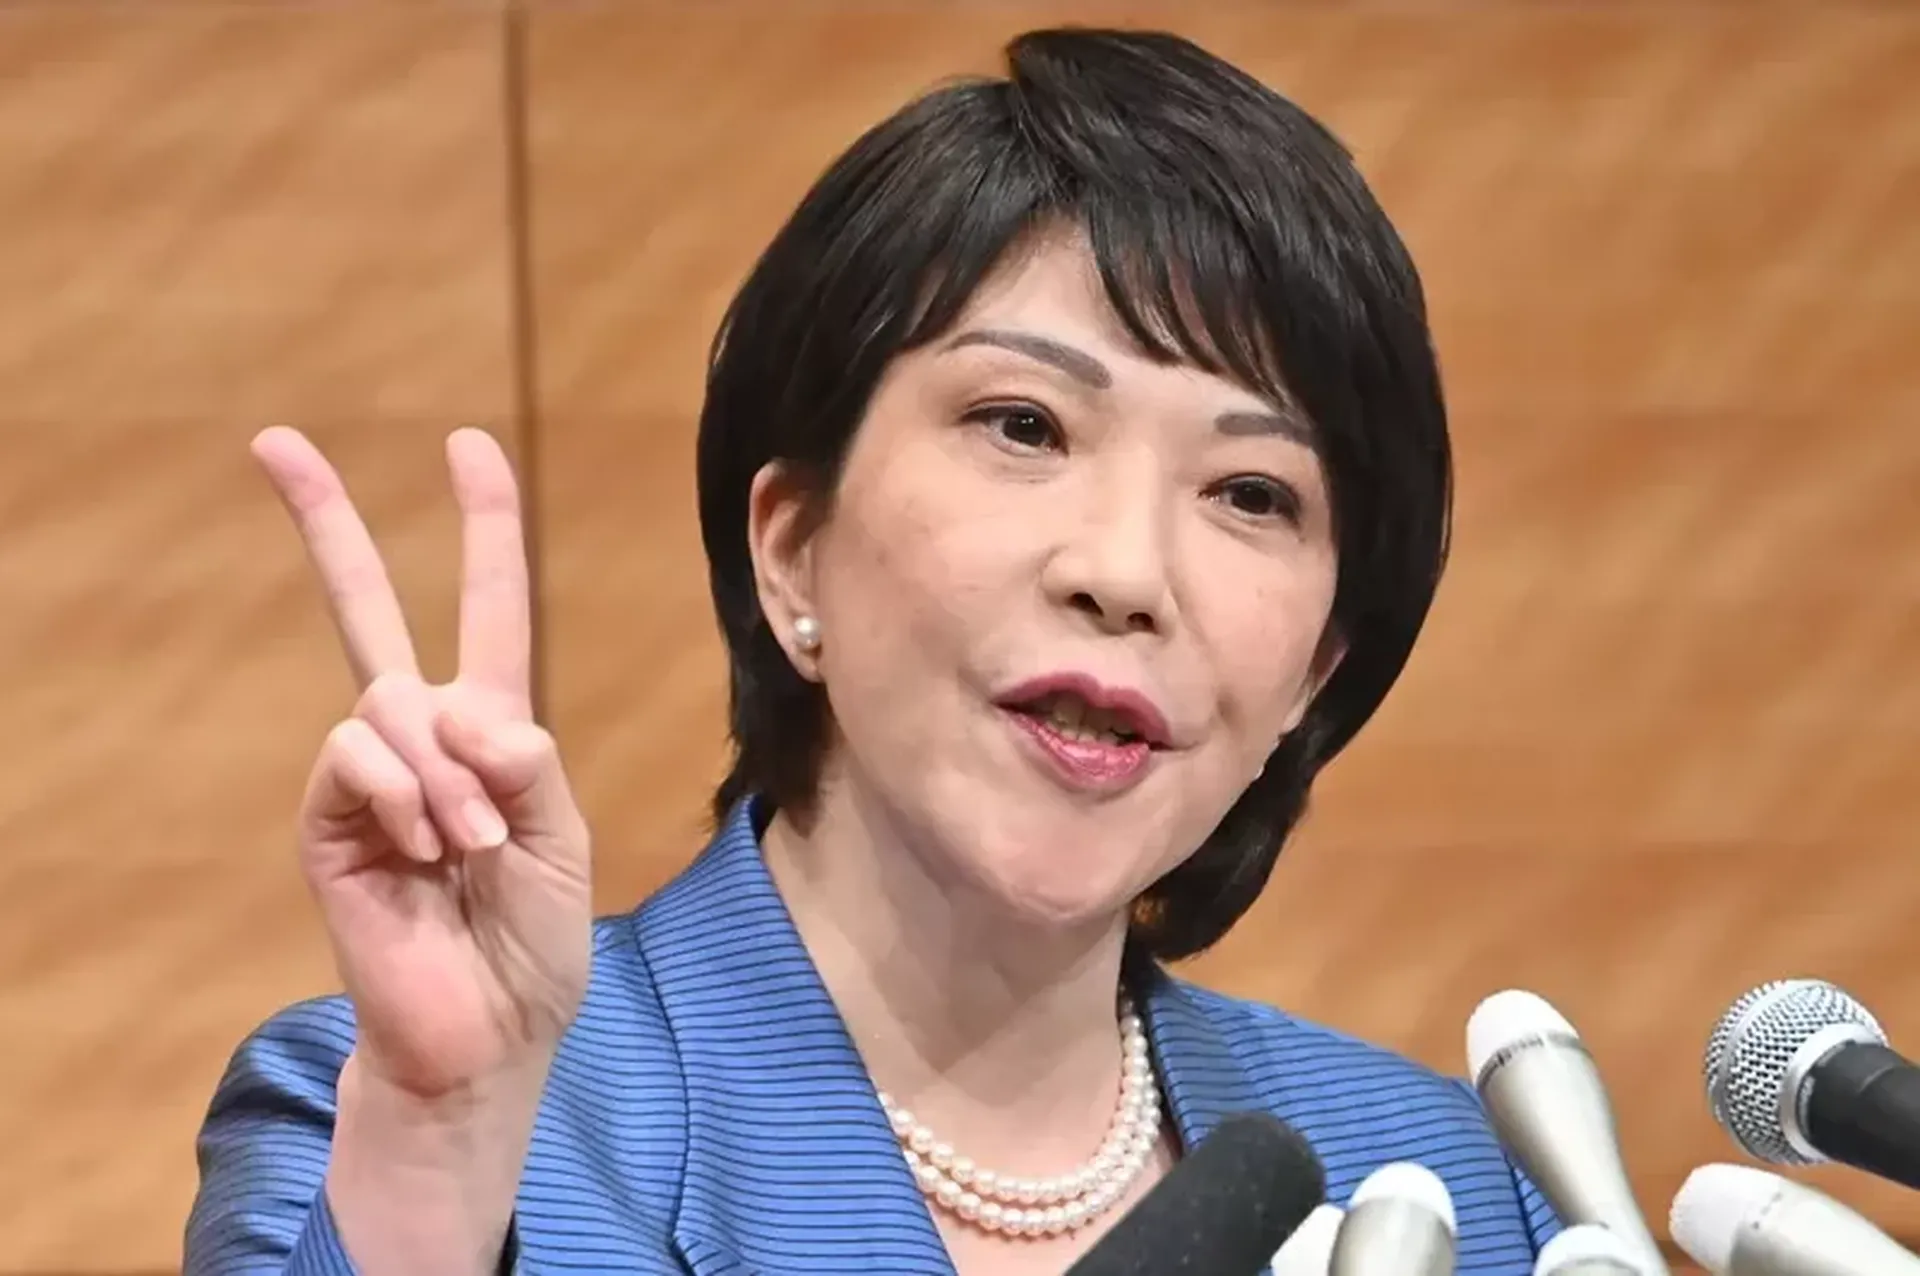 无派阀的高市早苗是被认为最接近“安倍路线”的候选人，她致力于成为日本的首位女性总理大臣。（共同社）